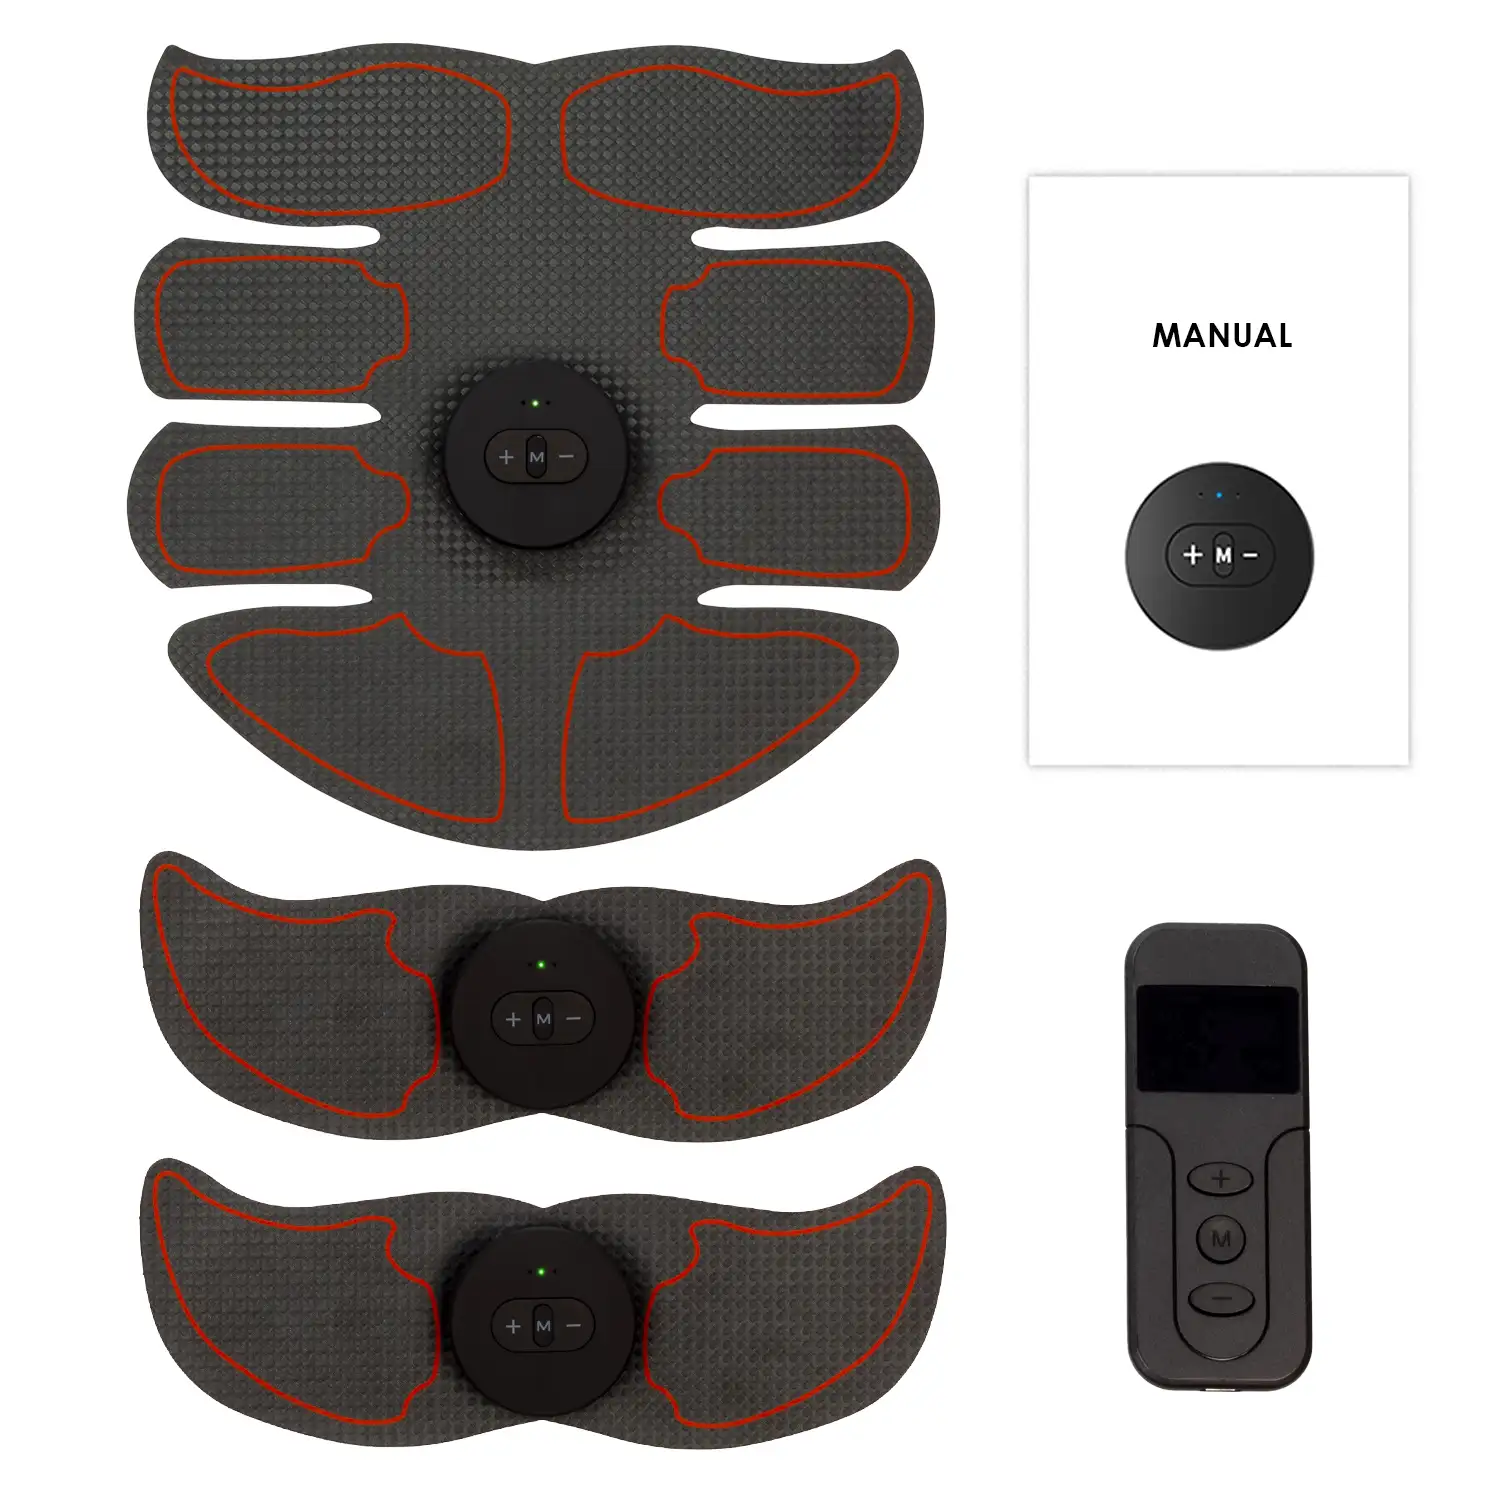 Estimulador electrónico y masaje EMS Z81Q con mando a distancia. Para abdominales, brazos y piernas. Batería recargable.